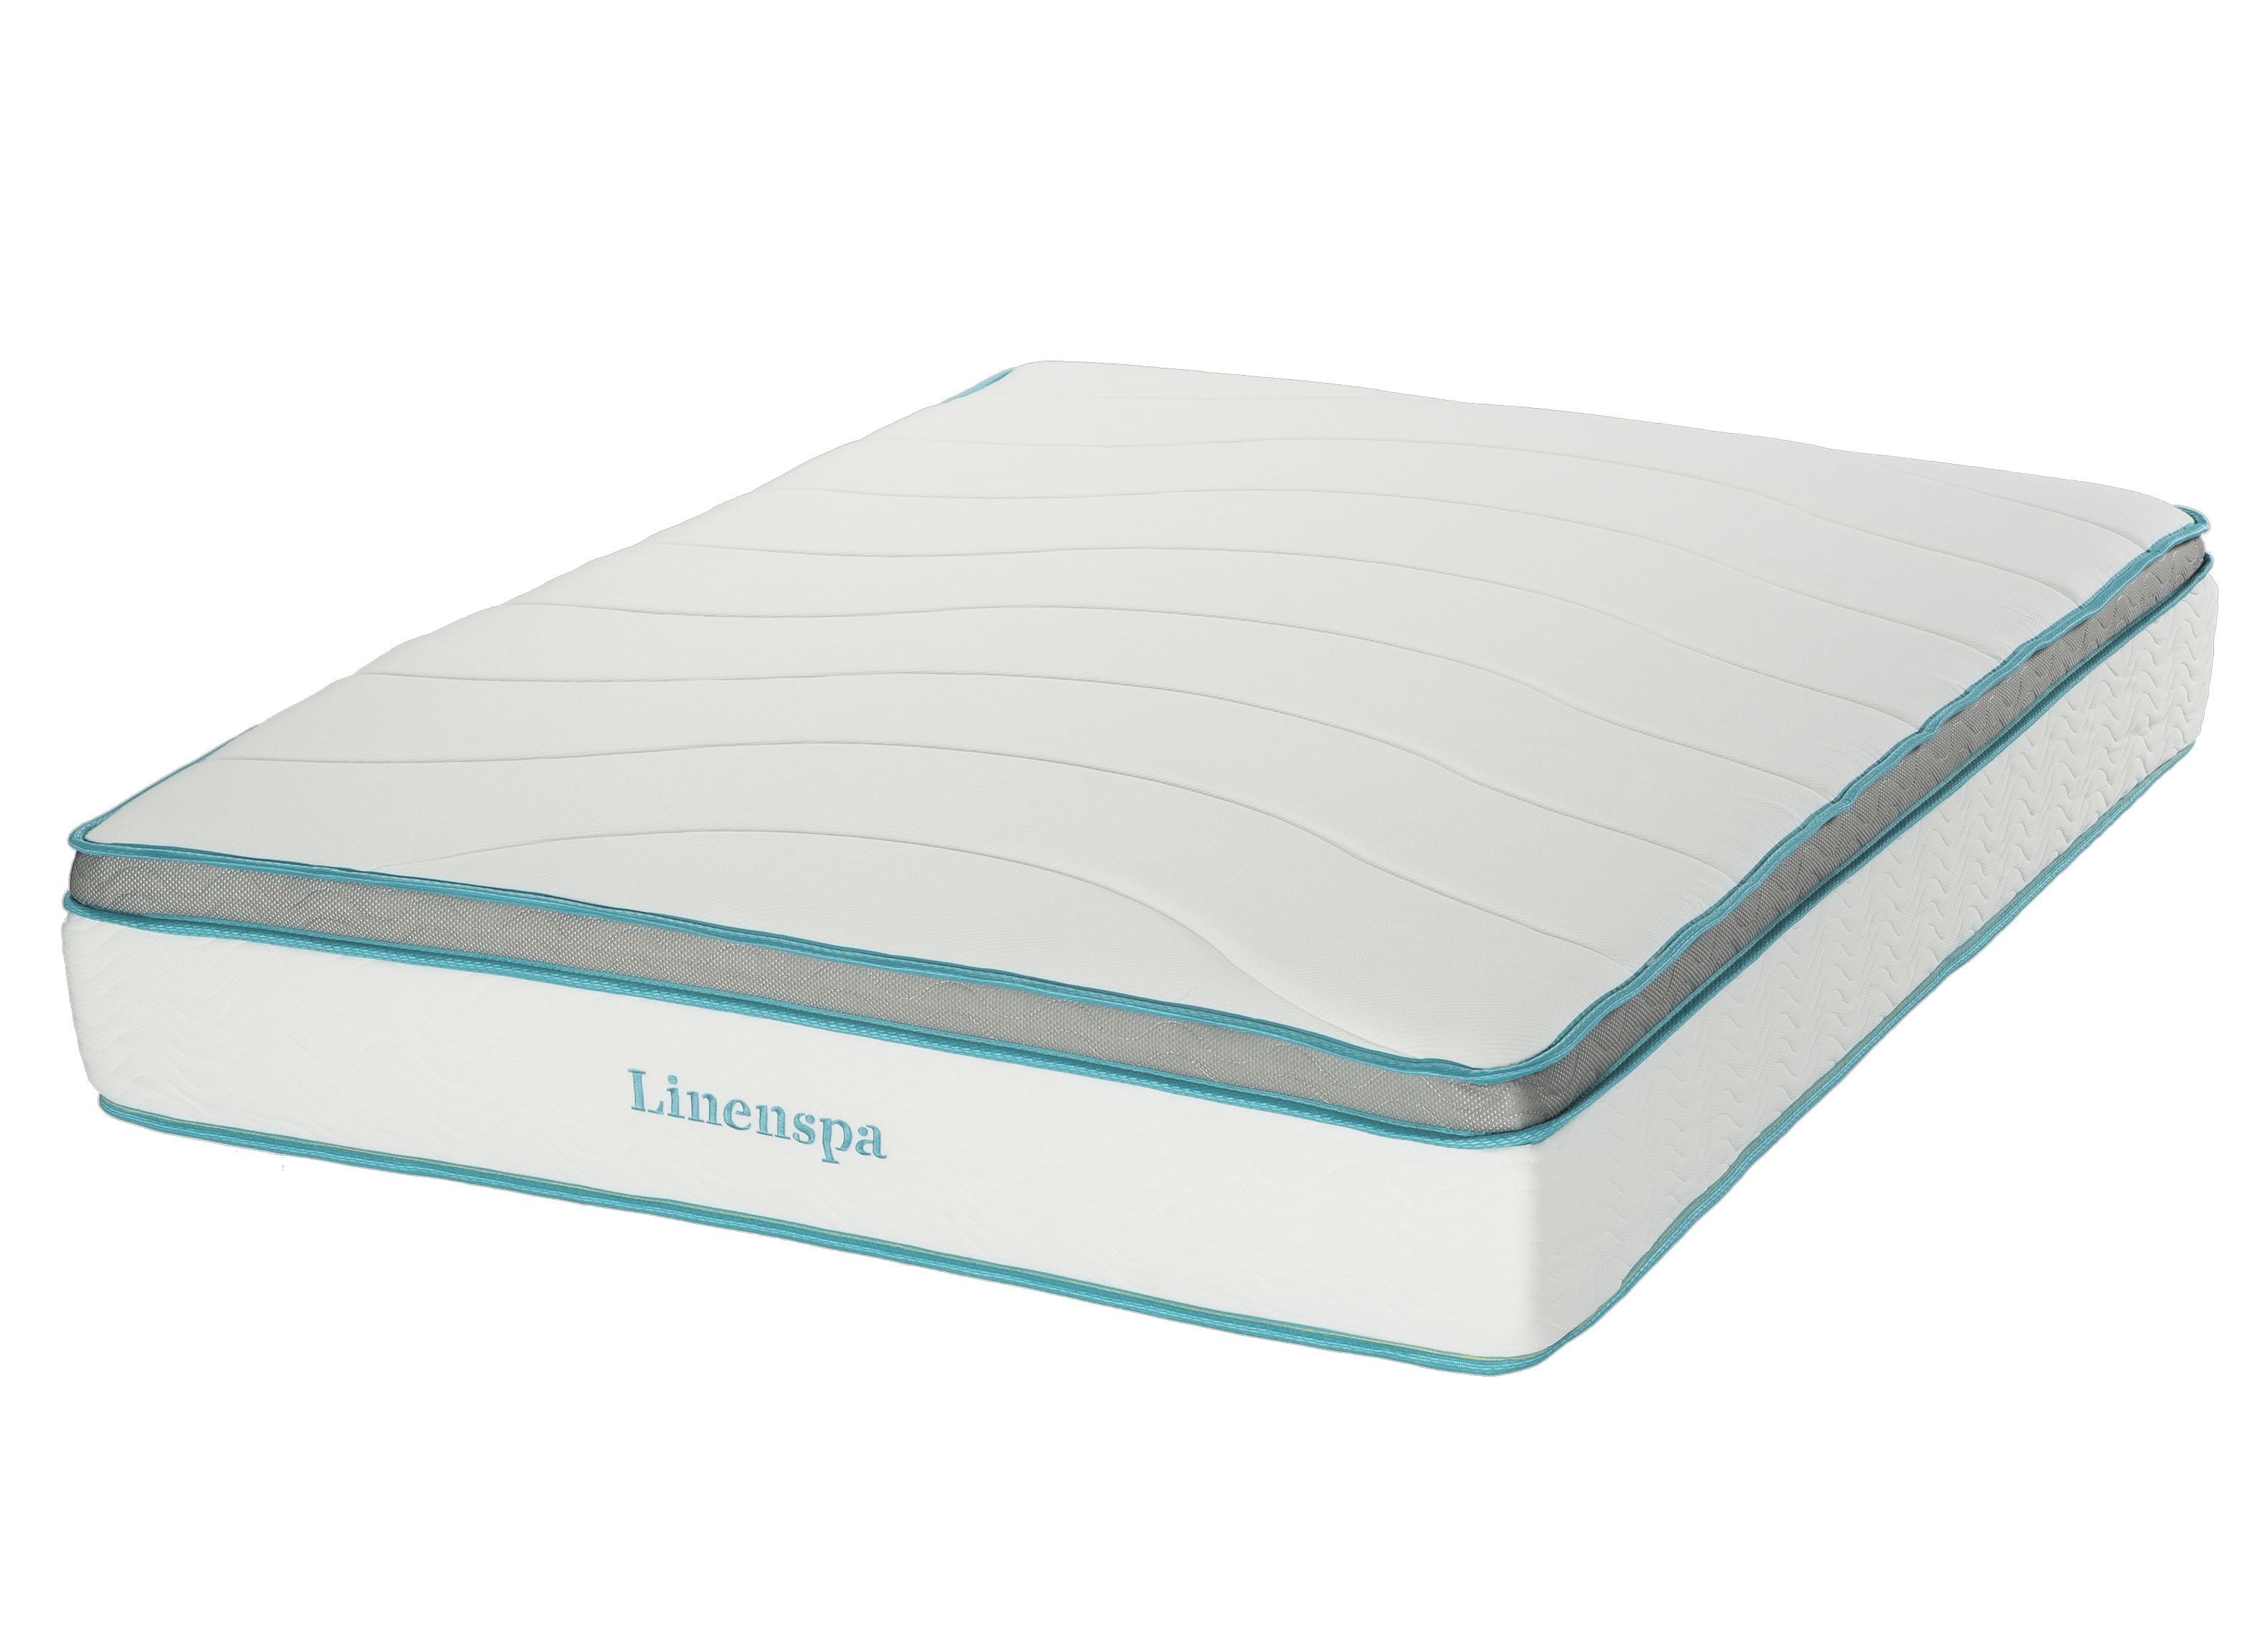 Linenspa Memory Foam Hybrid Mattress review